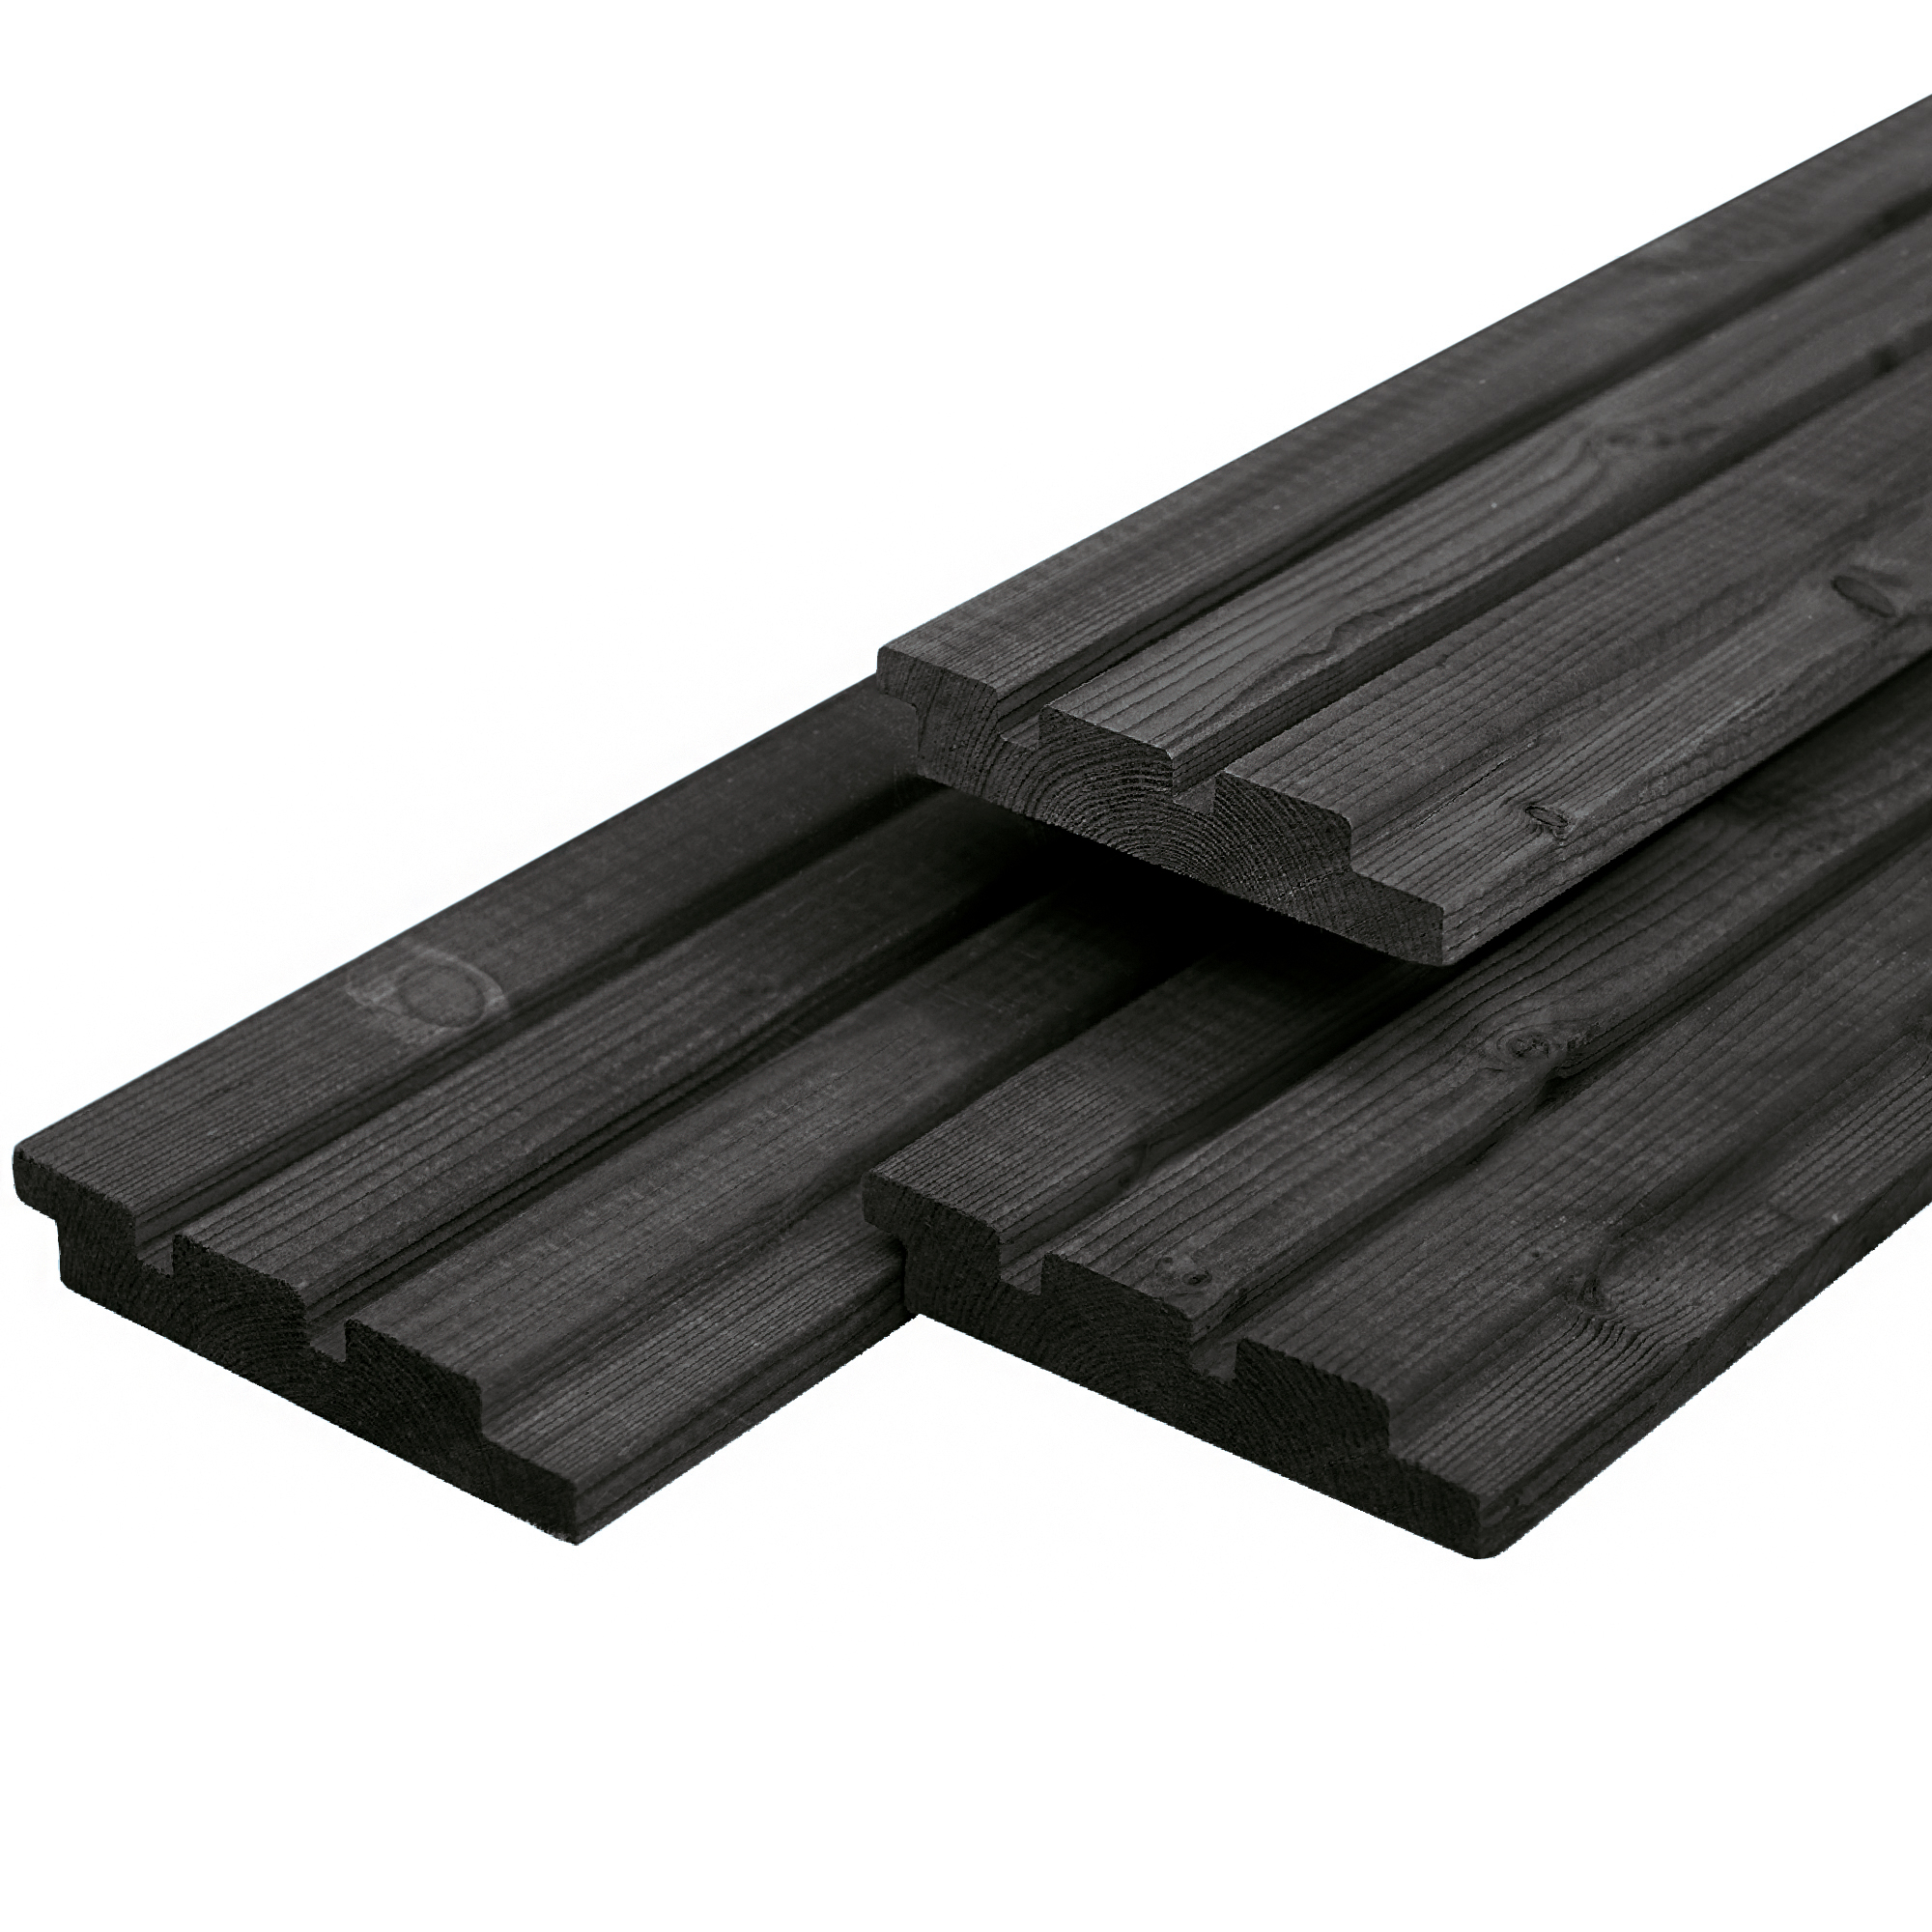 Dreifach-Profilholz, Mitteleuropäisches Fichtenholz schwarz gespritzt 2.2x14.0x400cm